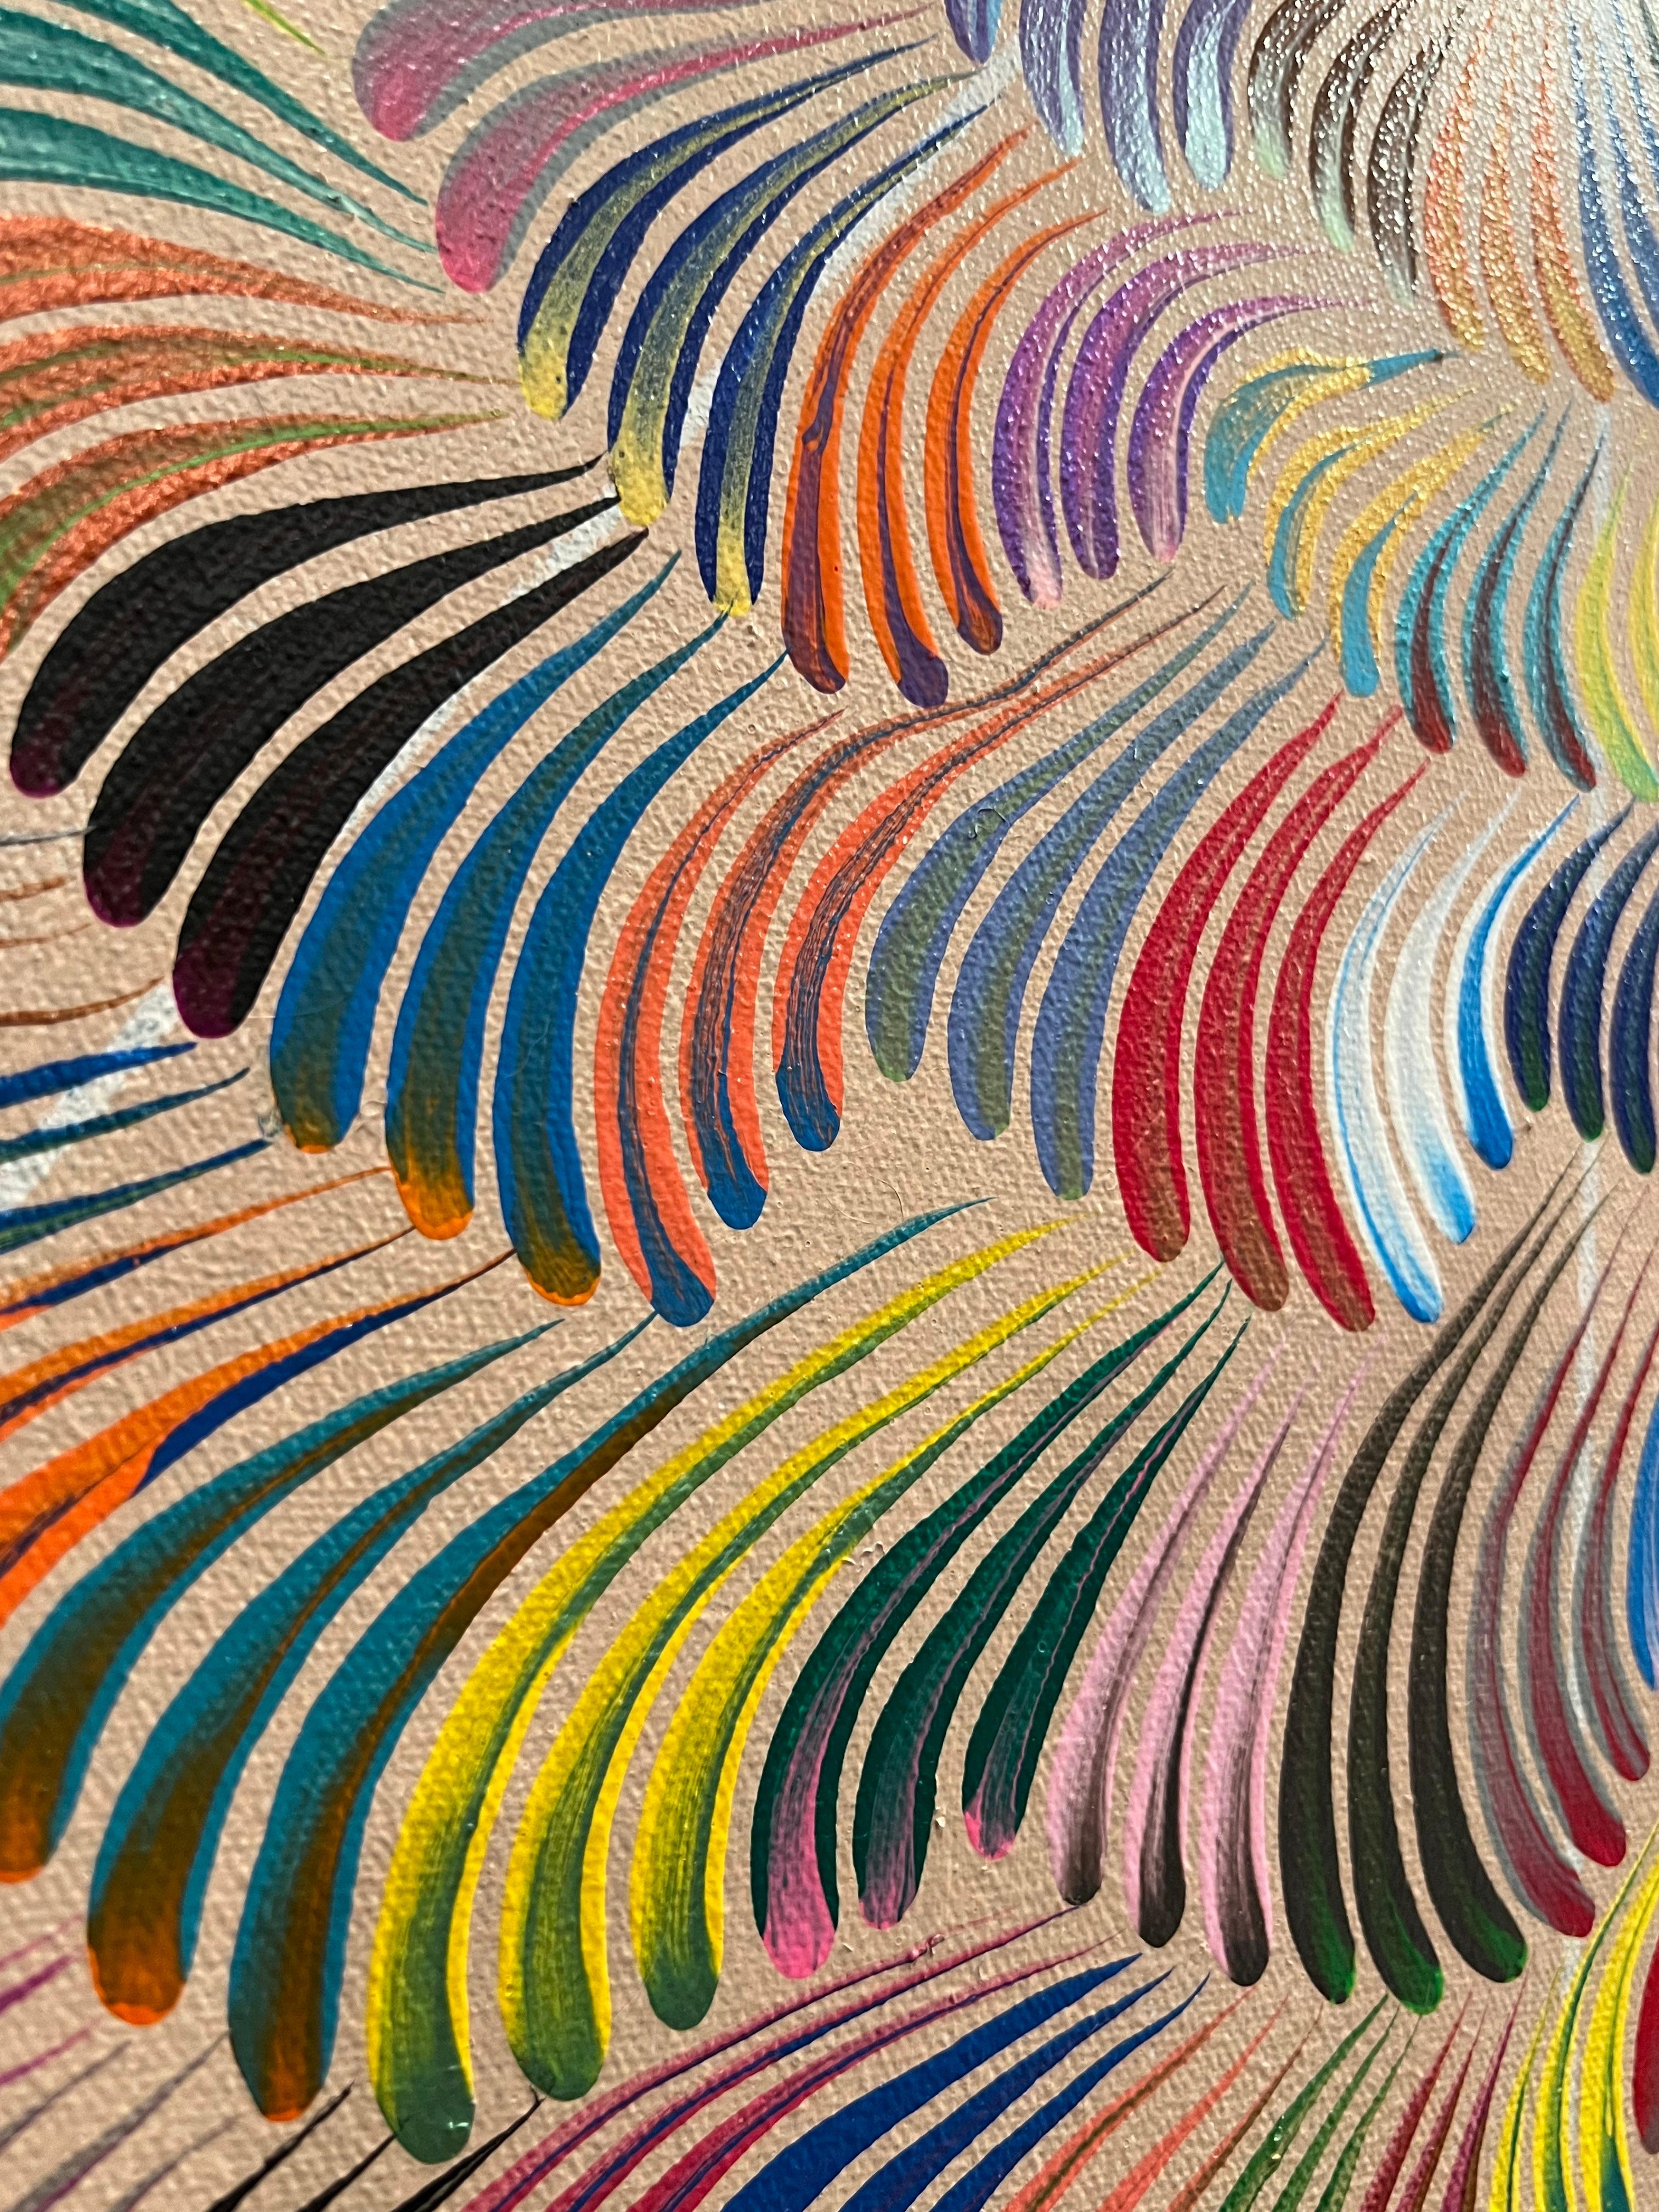 Tourbillons de couleurs contemporains, peinture abstraite vibrante inspirée de Keith Haring - Géométrique abstrait Mixed Media Art par Avi Ash